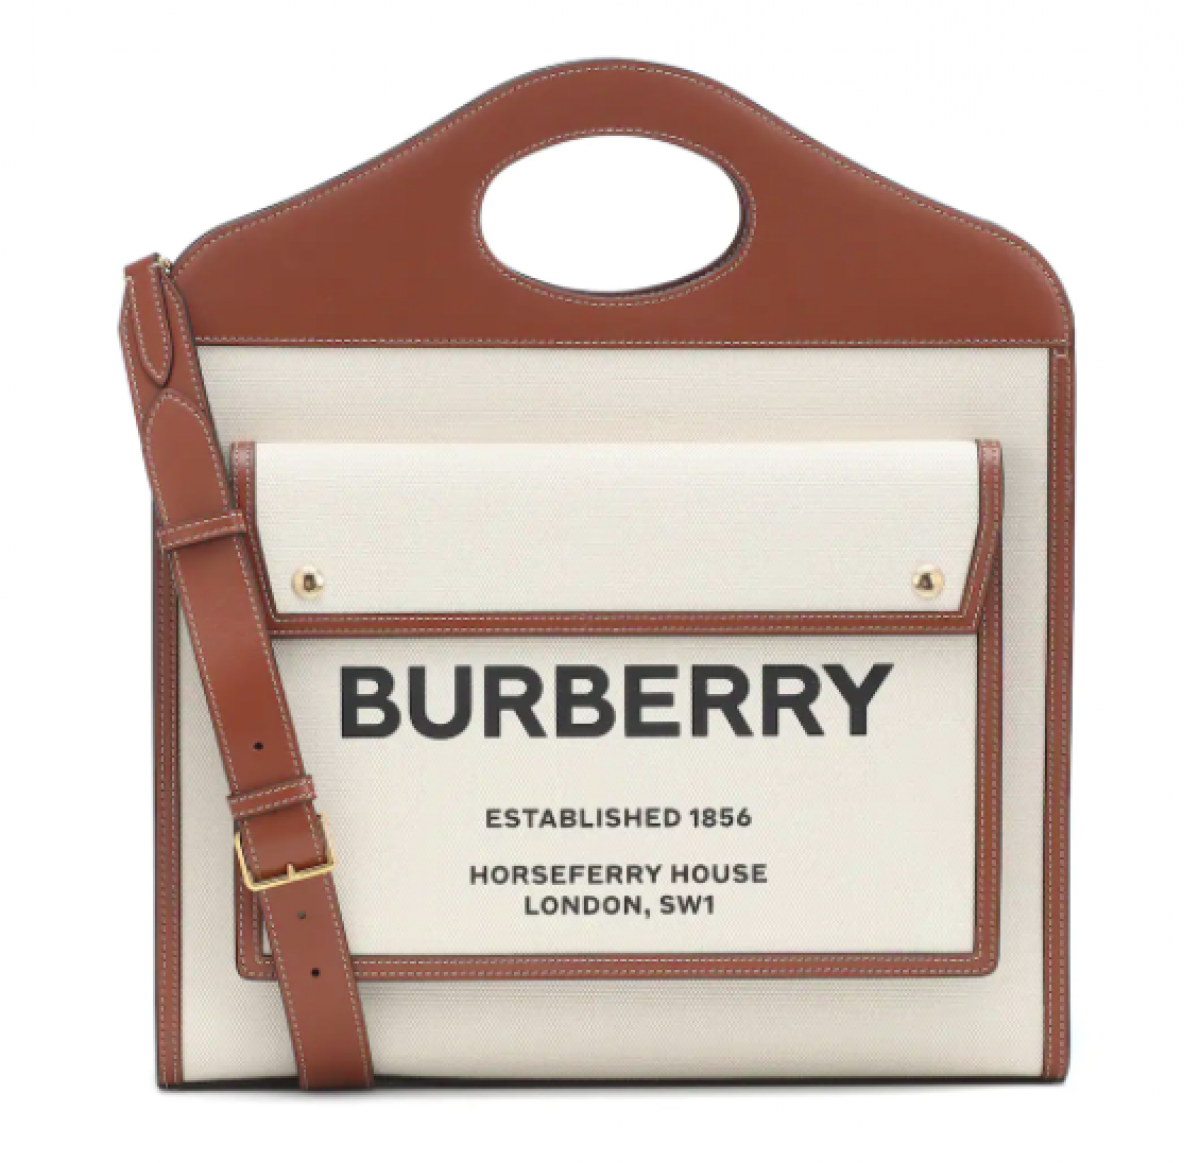 Le sac de poche de Burberry